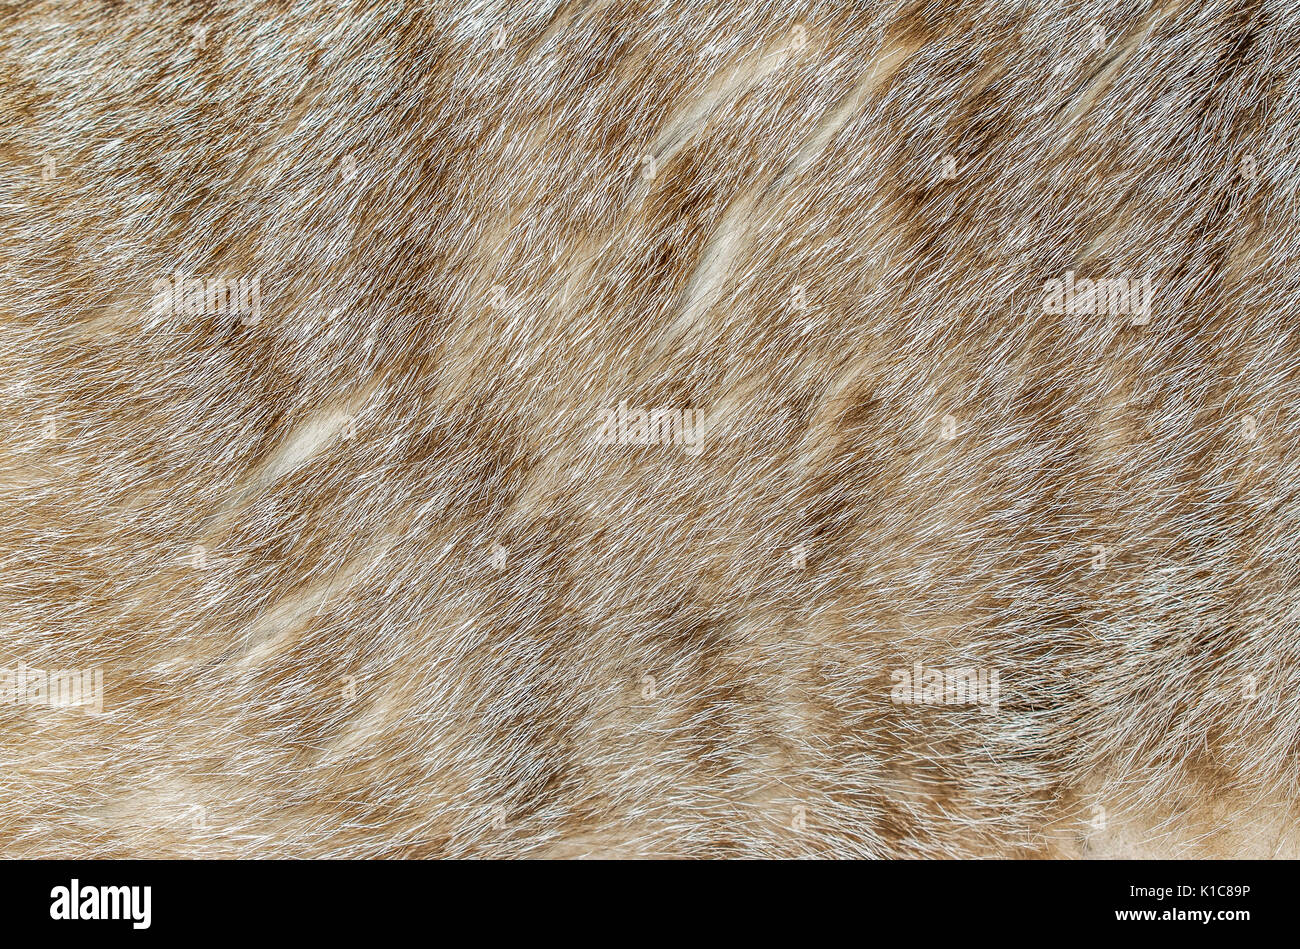 Brown, yellow and grey cat fur closeup Stock Photo